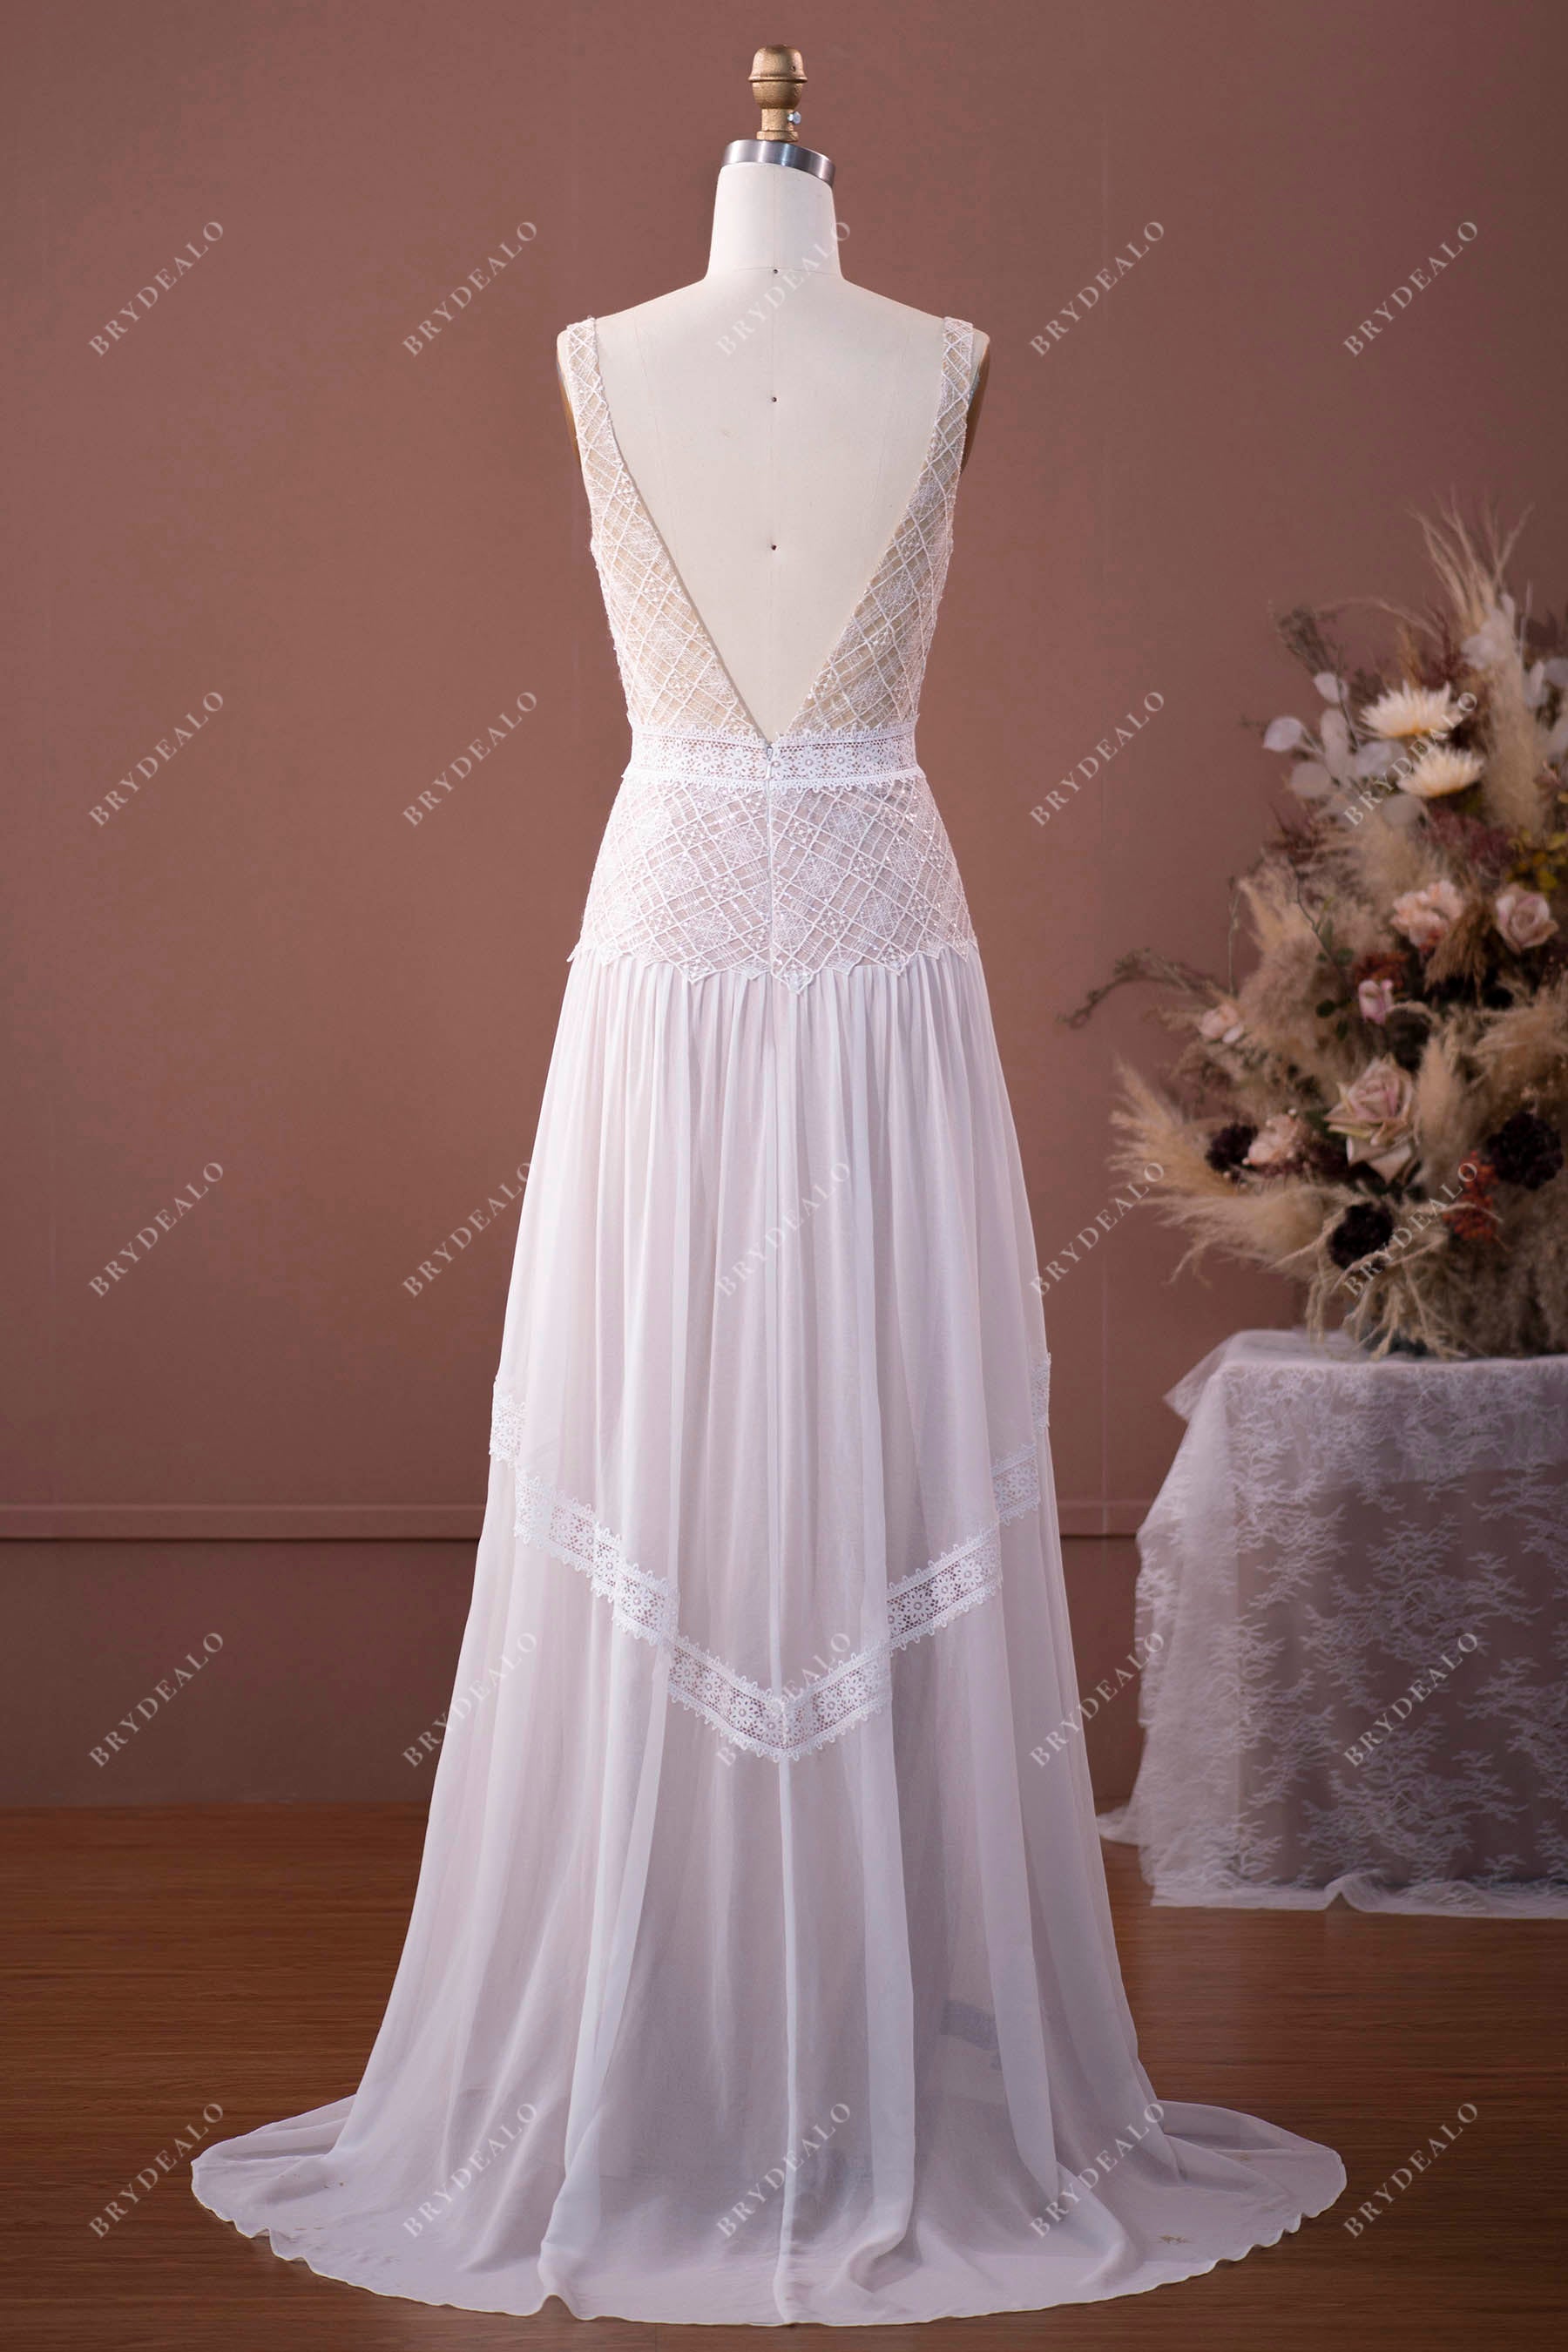 V-back A-line wedding gown